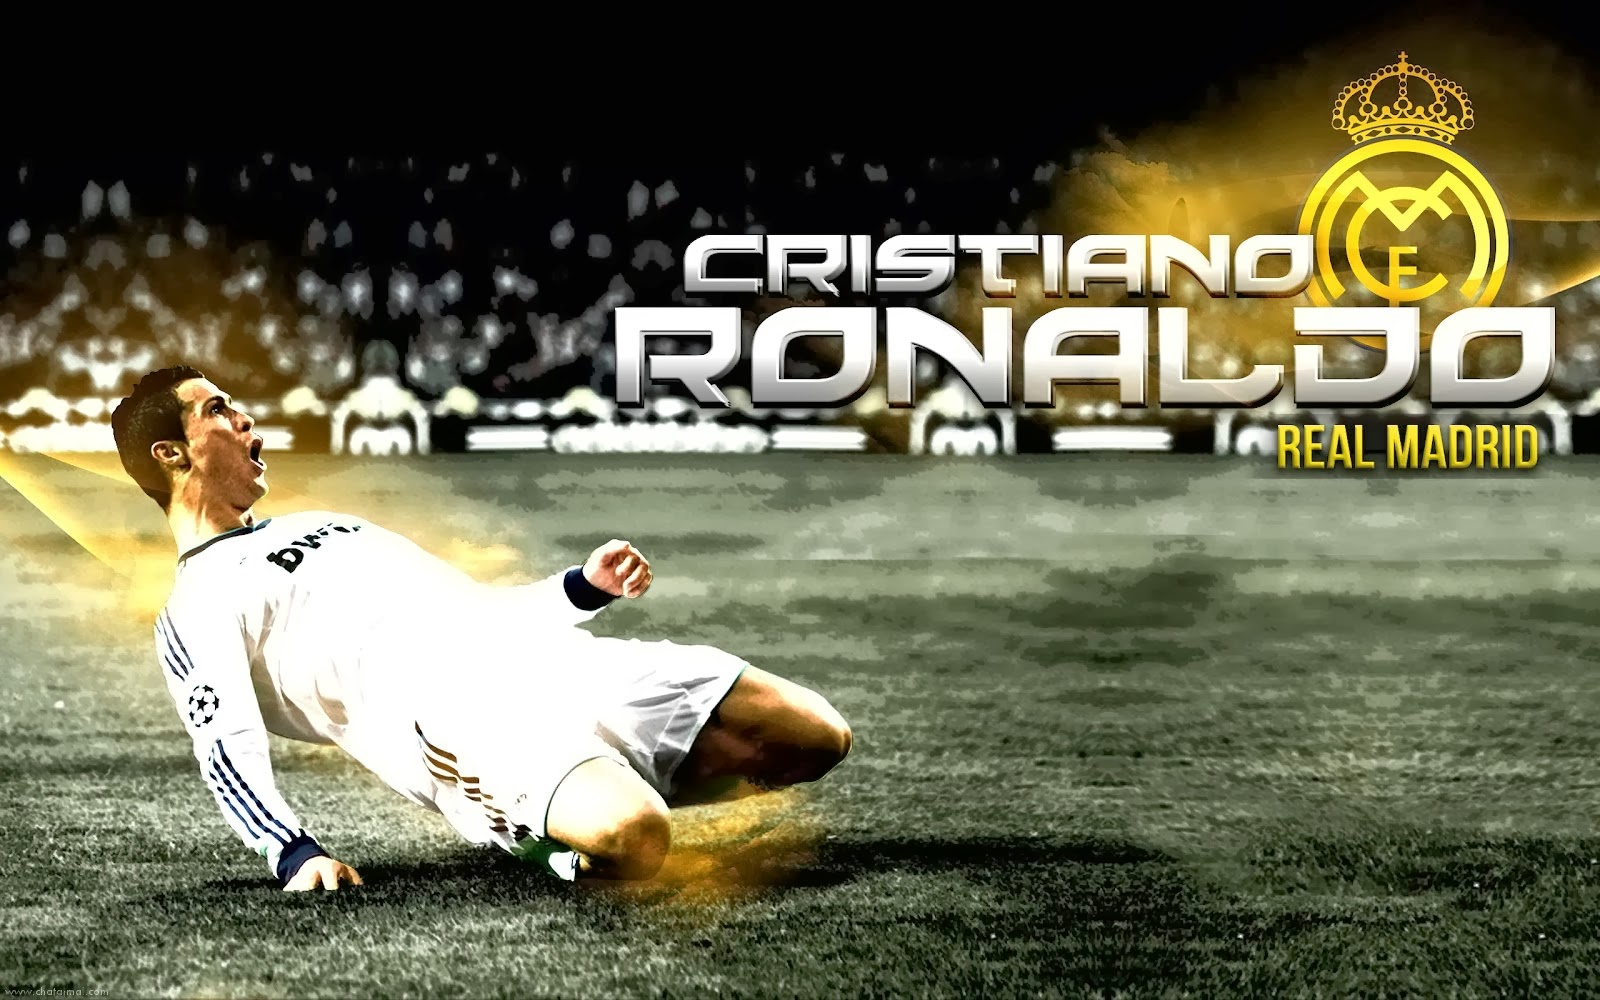 صور خلفيات كرستيانو رونالدو hd 2015 , رمزيات كرستيانو رونالدو 2015 ,Cristiano Ronaldo Wallpapers